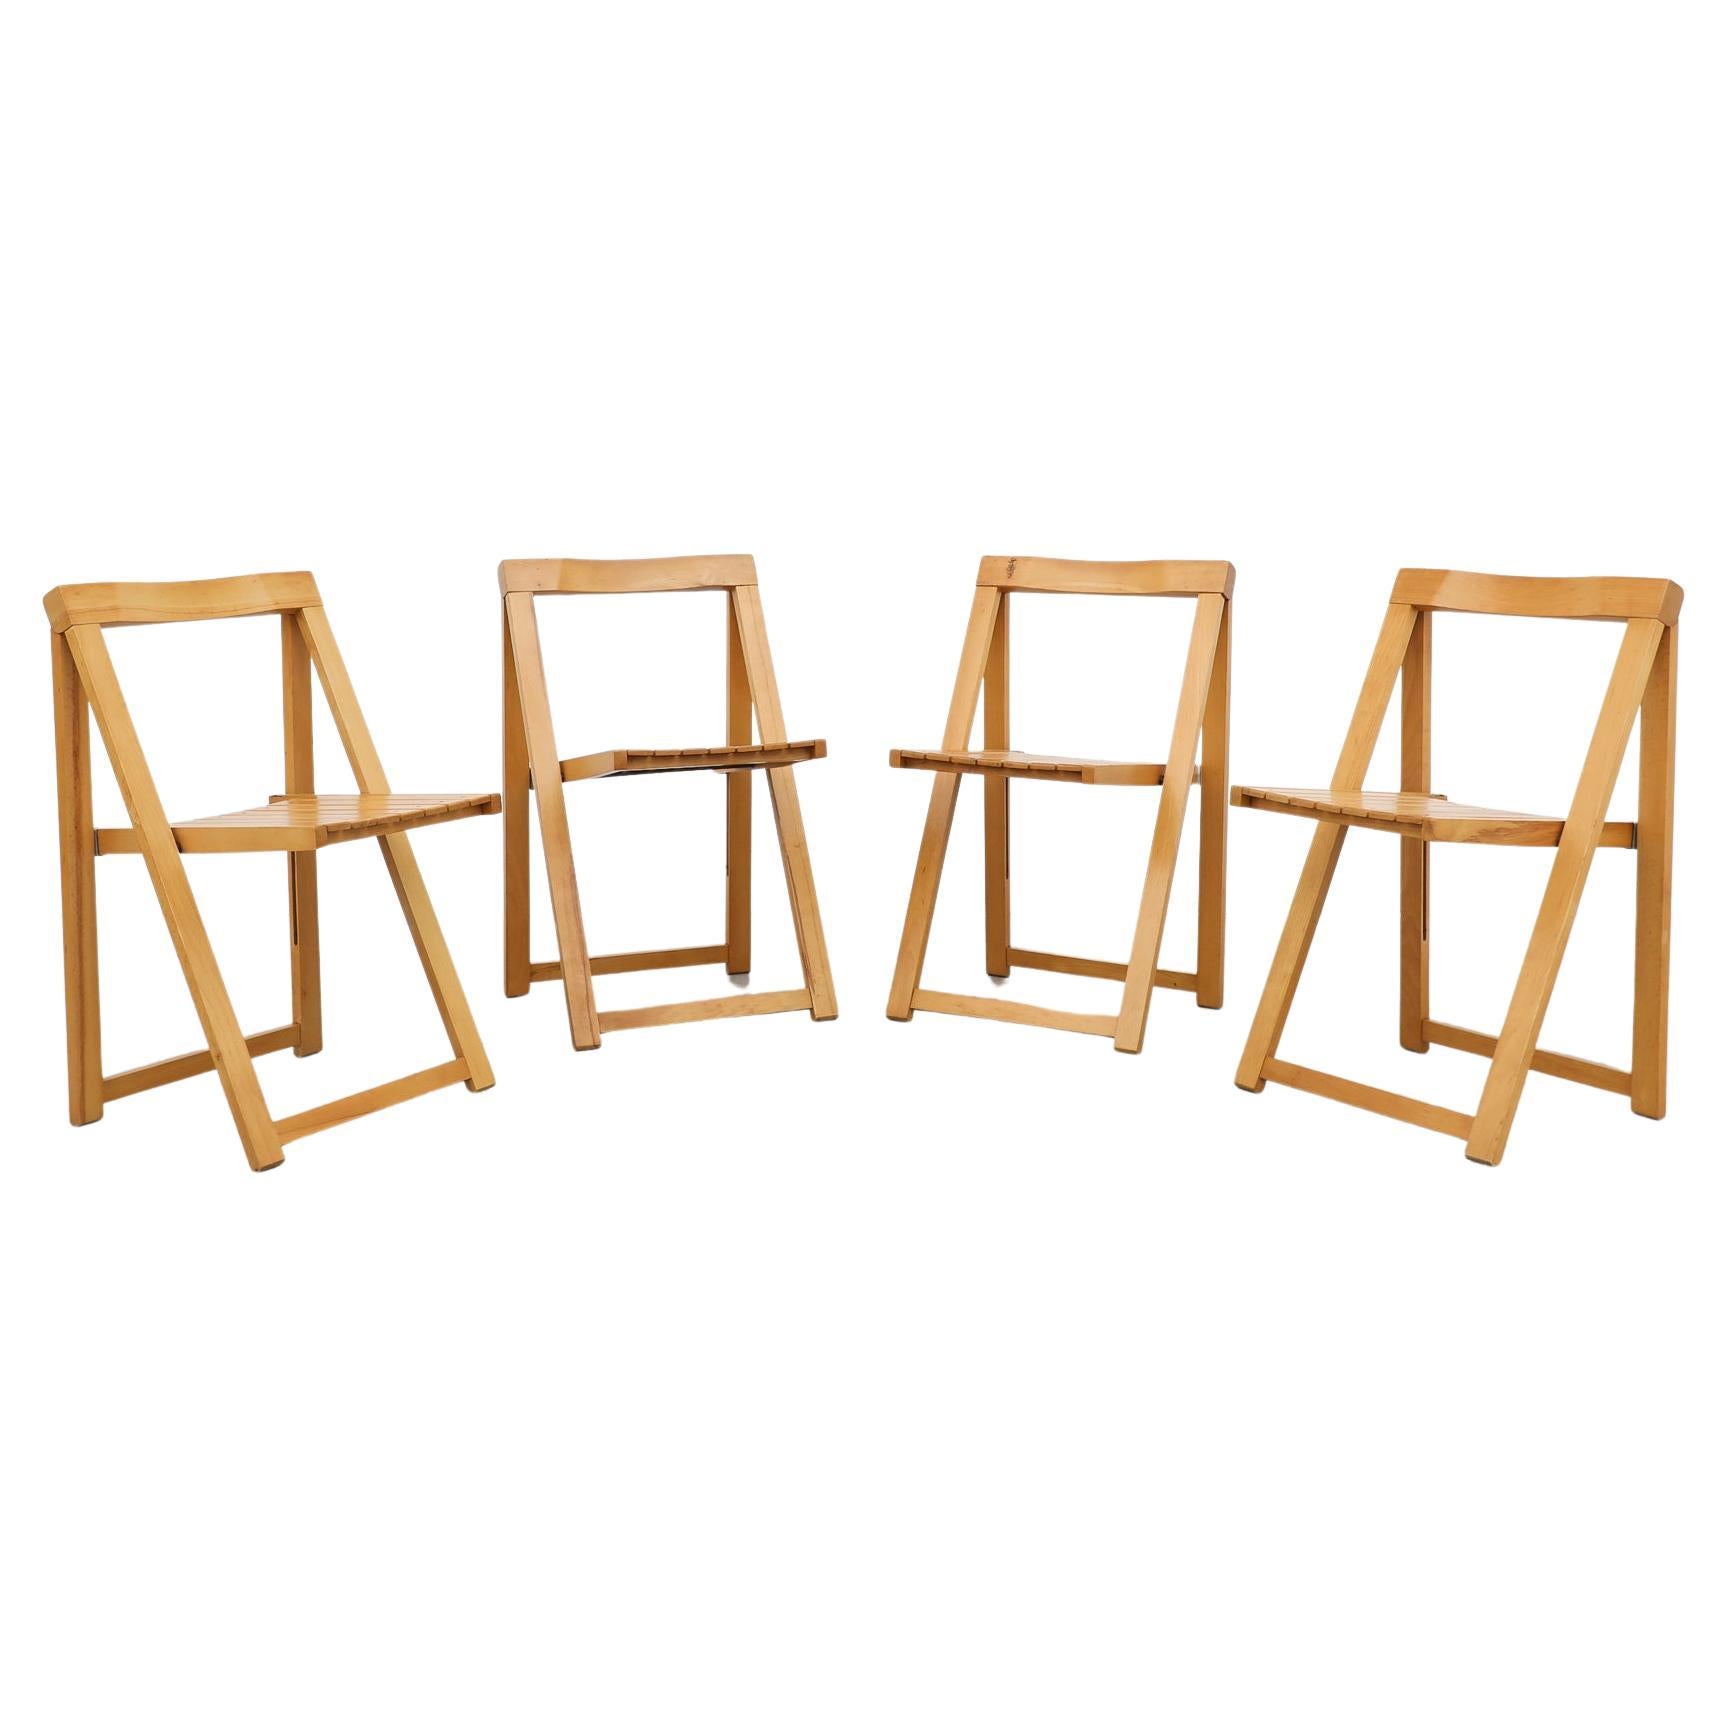 Satz von 4 klappbaren Holzstühlen mit blondem Lattenrost von Aldo Jacober für Alberto Bazzini